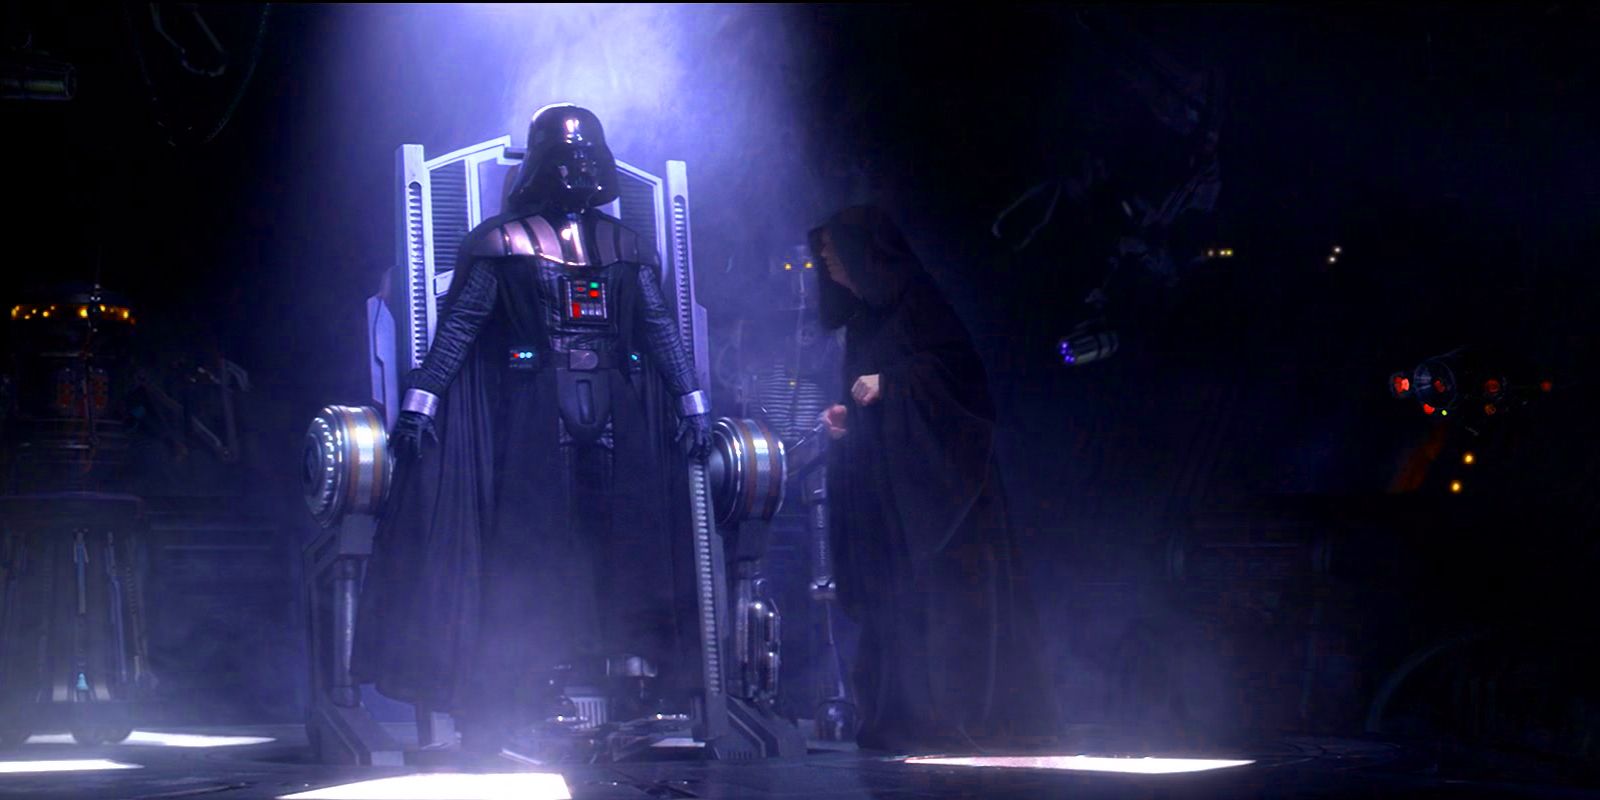 ¿Quién era más poderoso: Darth Vader o Palpatine?